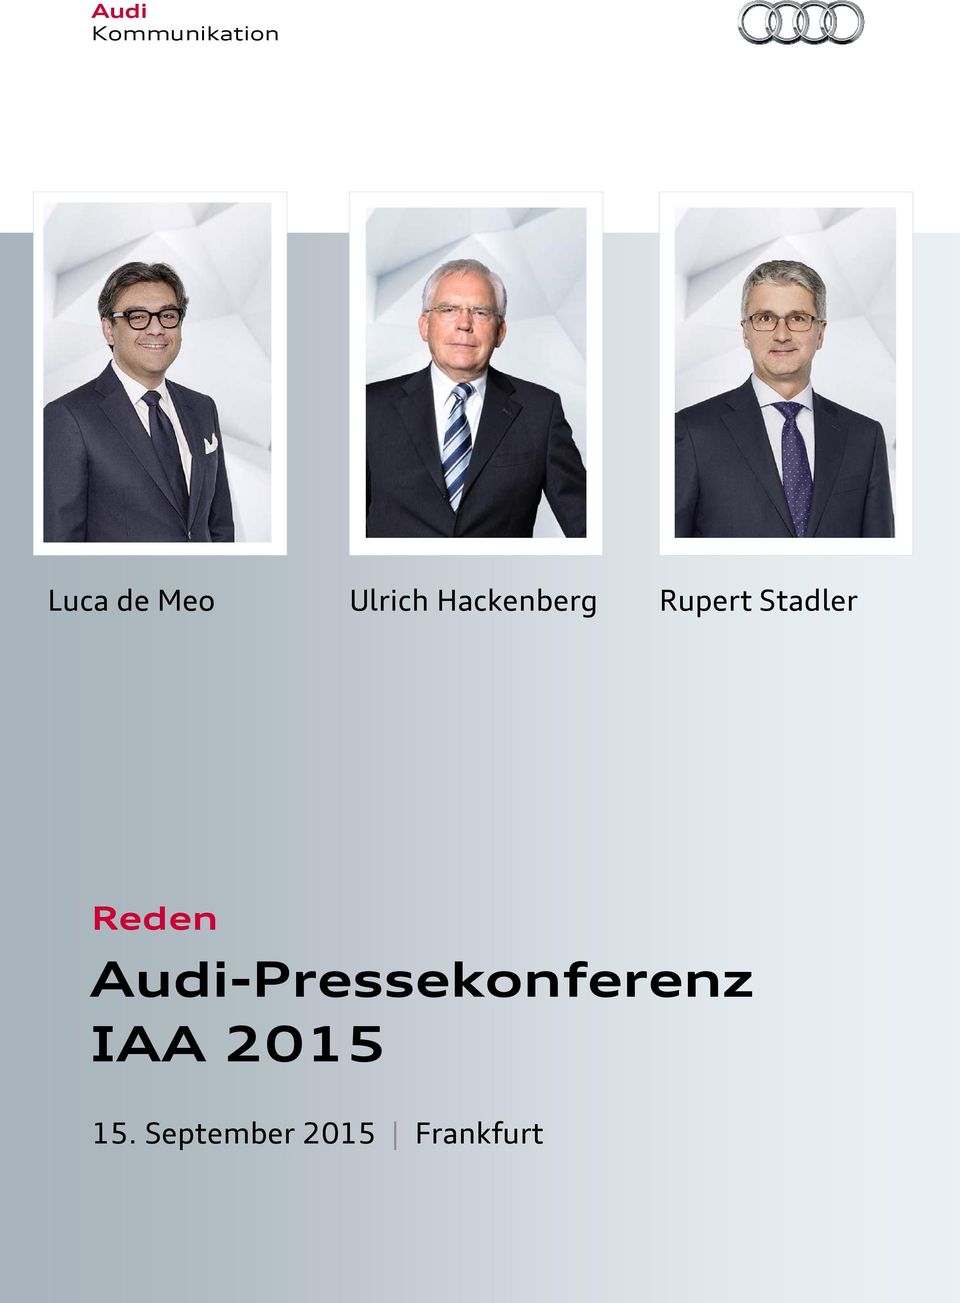 Reden Audi-Pressekonferenz